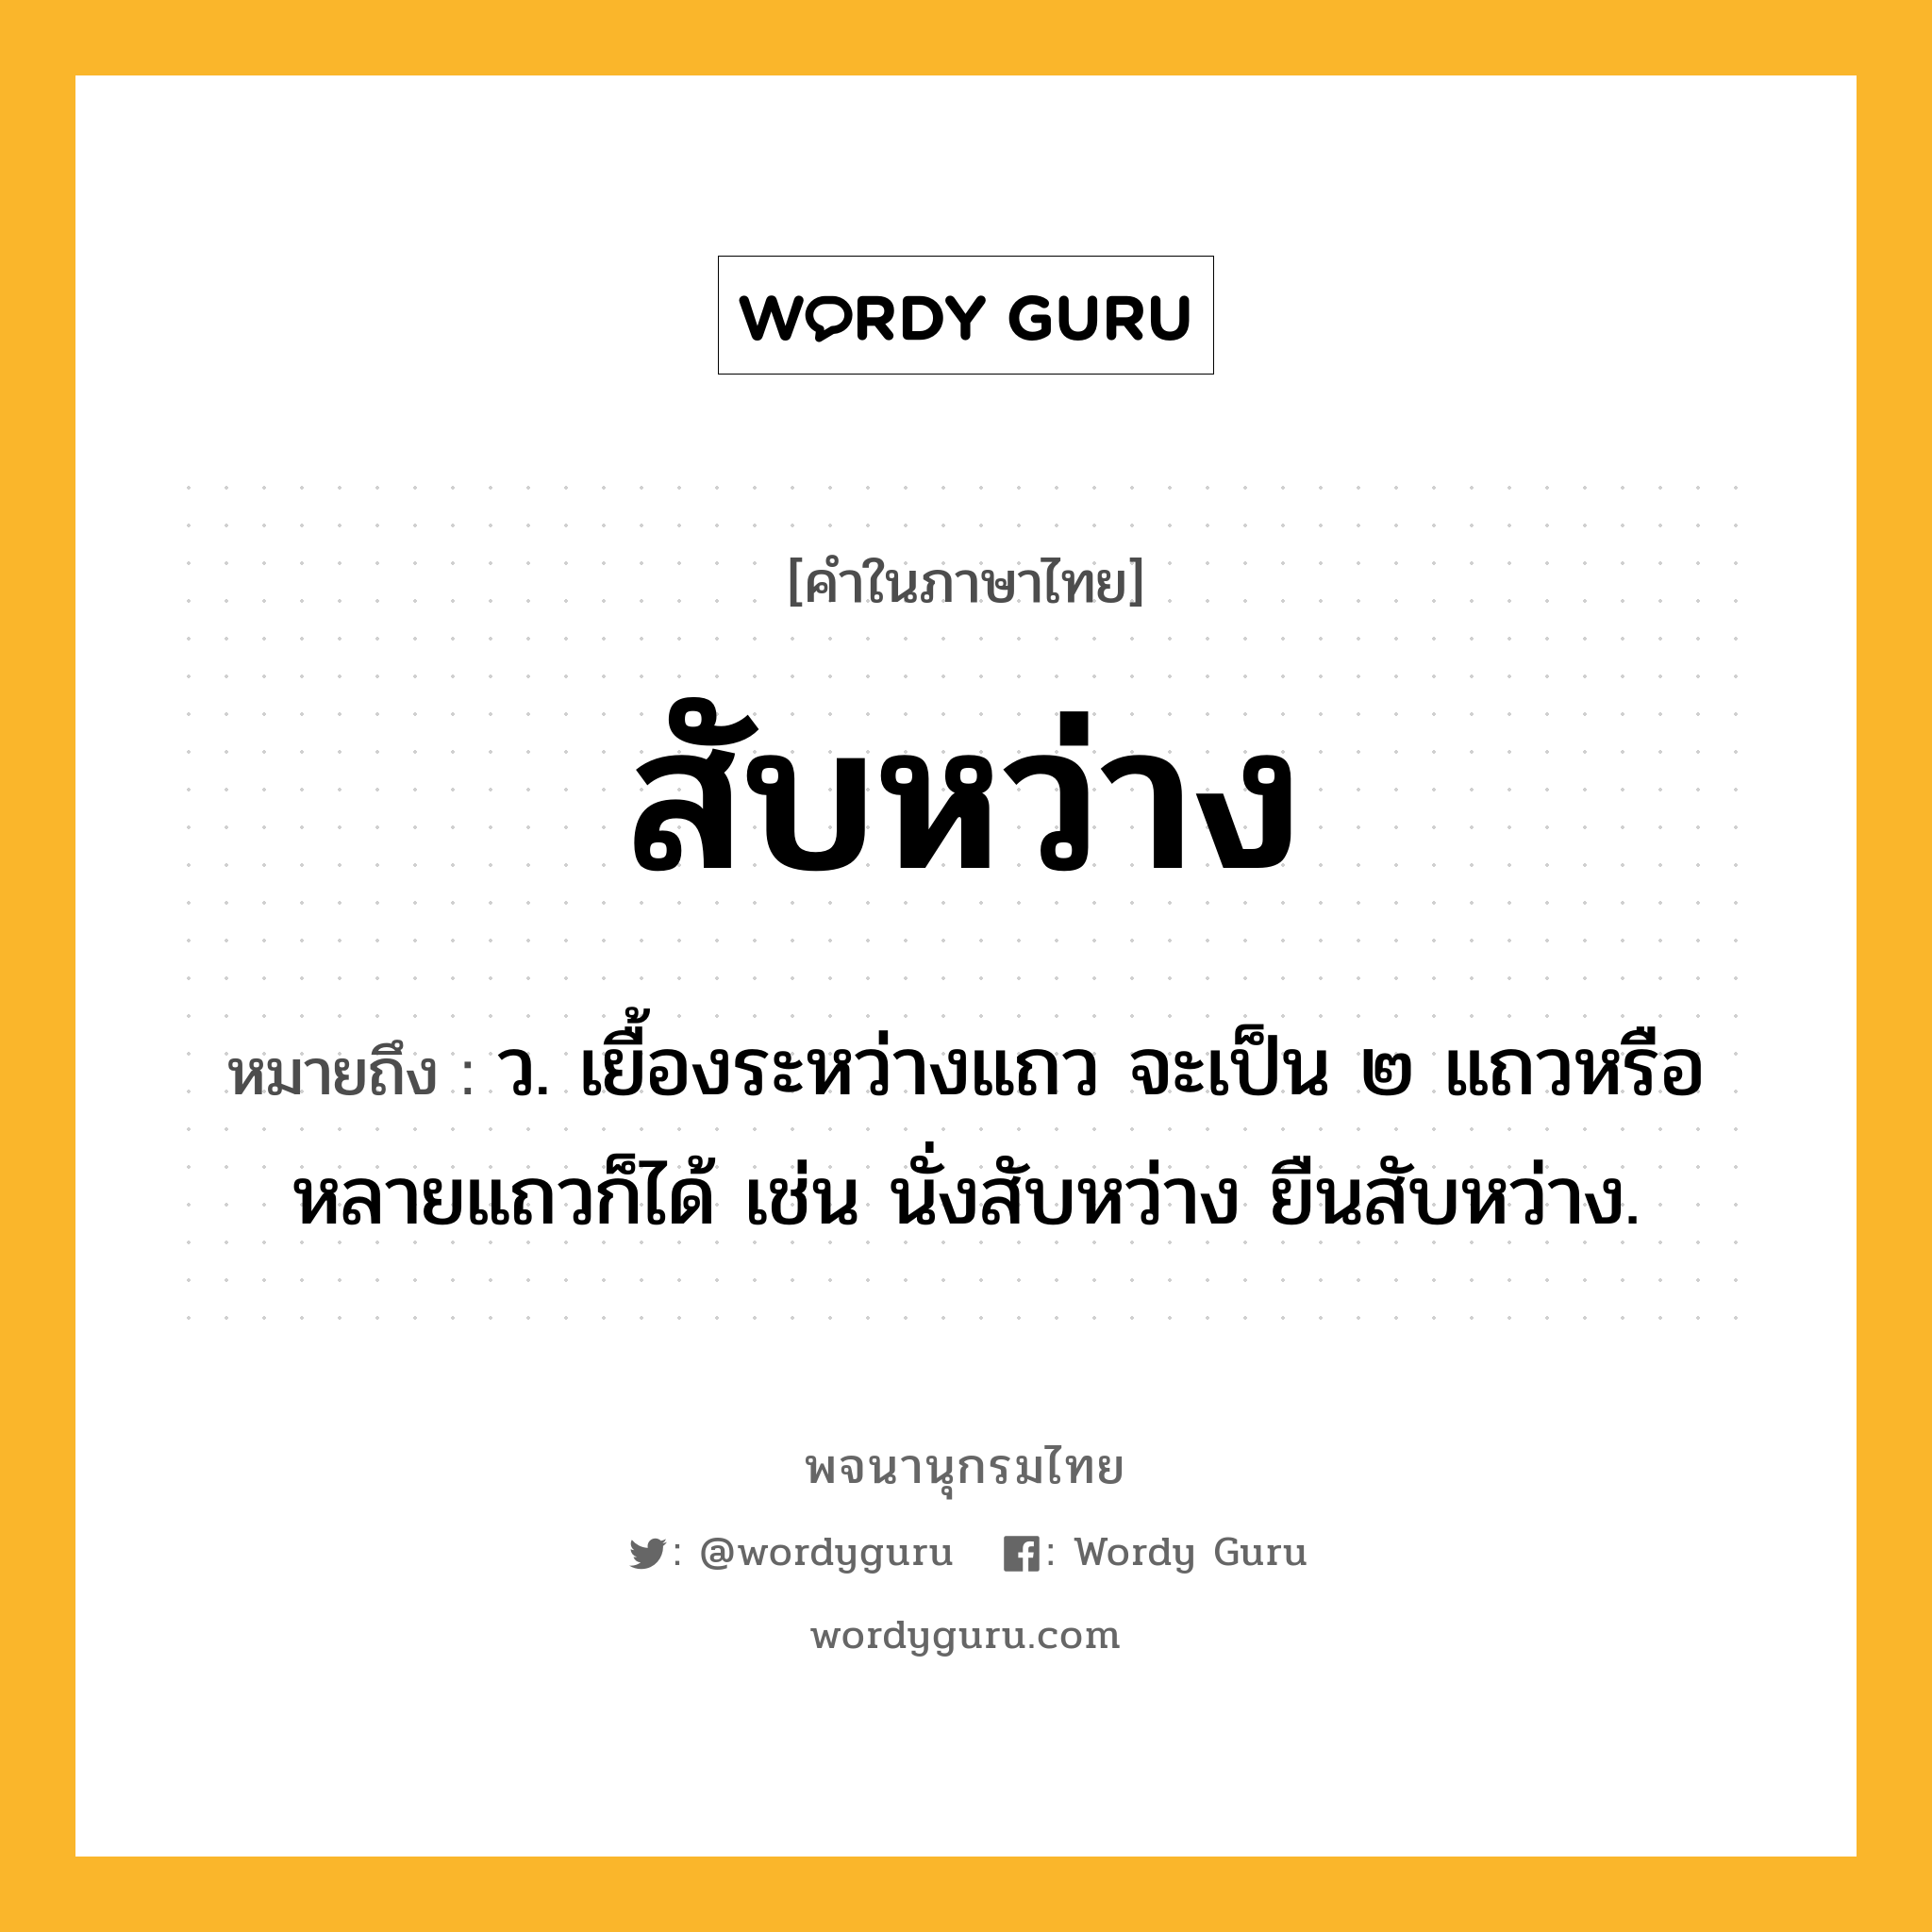 สับหว่าง หมายถึงอะไร?, คำในภาษาไทย สับหว่าง หมายถึง ว. เยื้องระหว่างแถว จะเป็น ๒ แถวหรือหลายแถวก็ได้ เช่น นั่งสับหว่าง ยืนสับหว่าง.